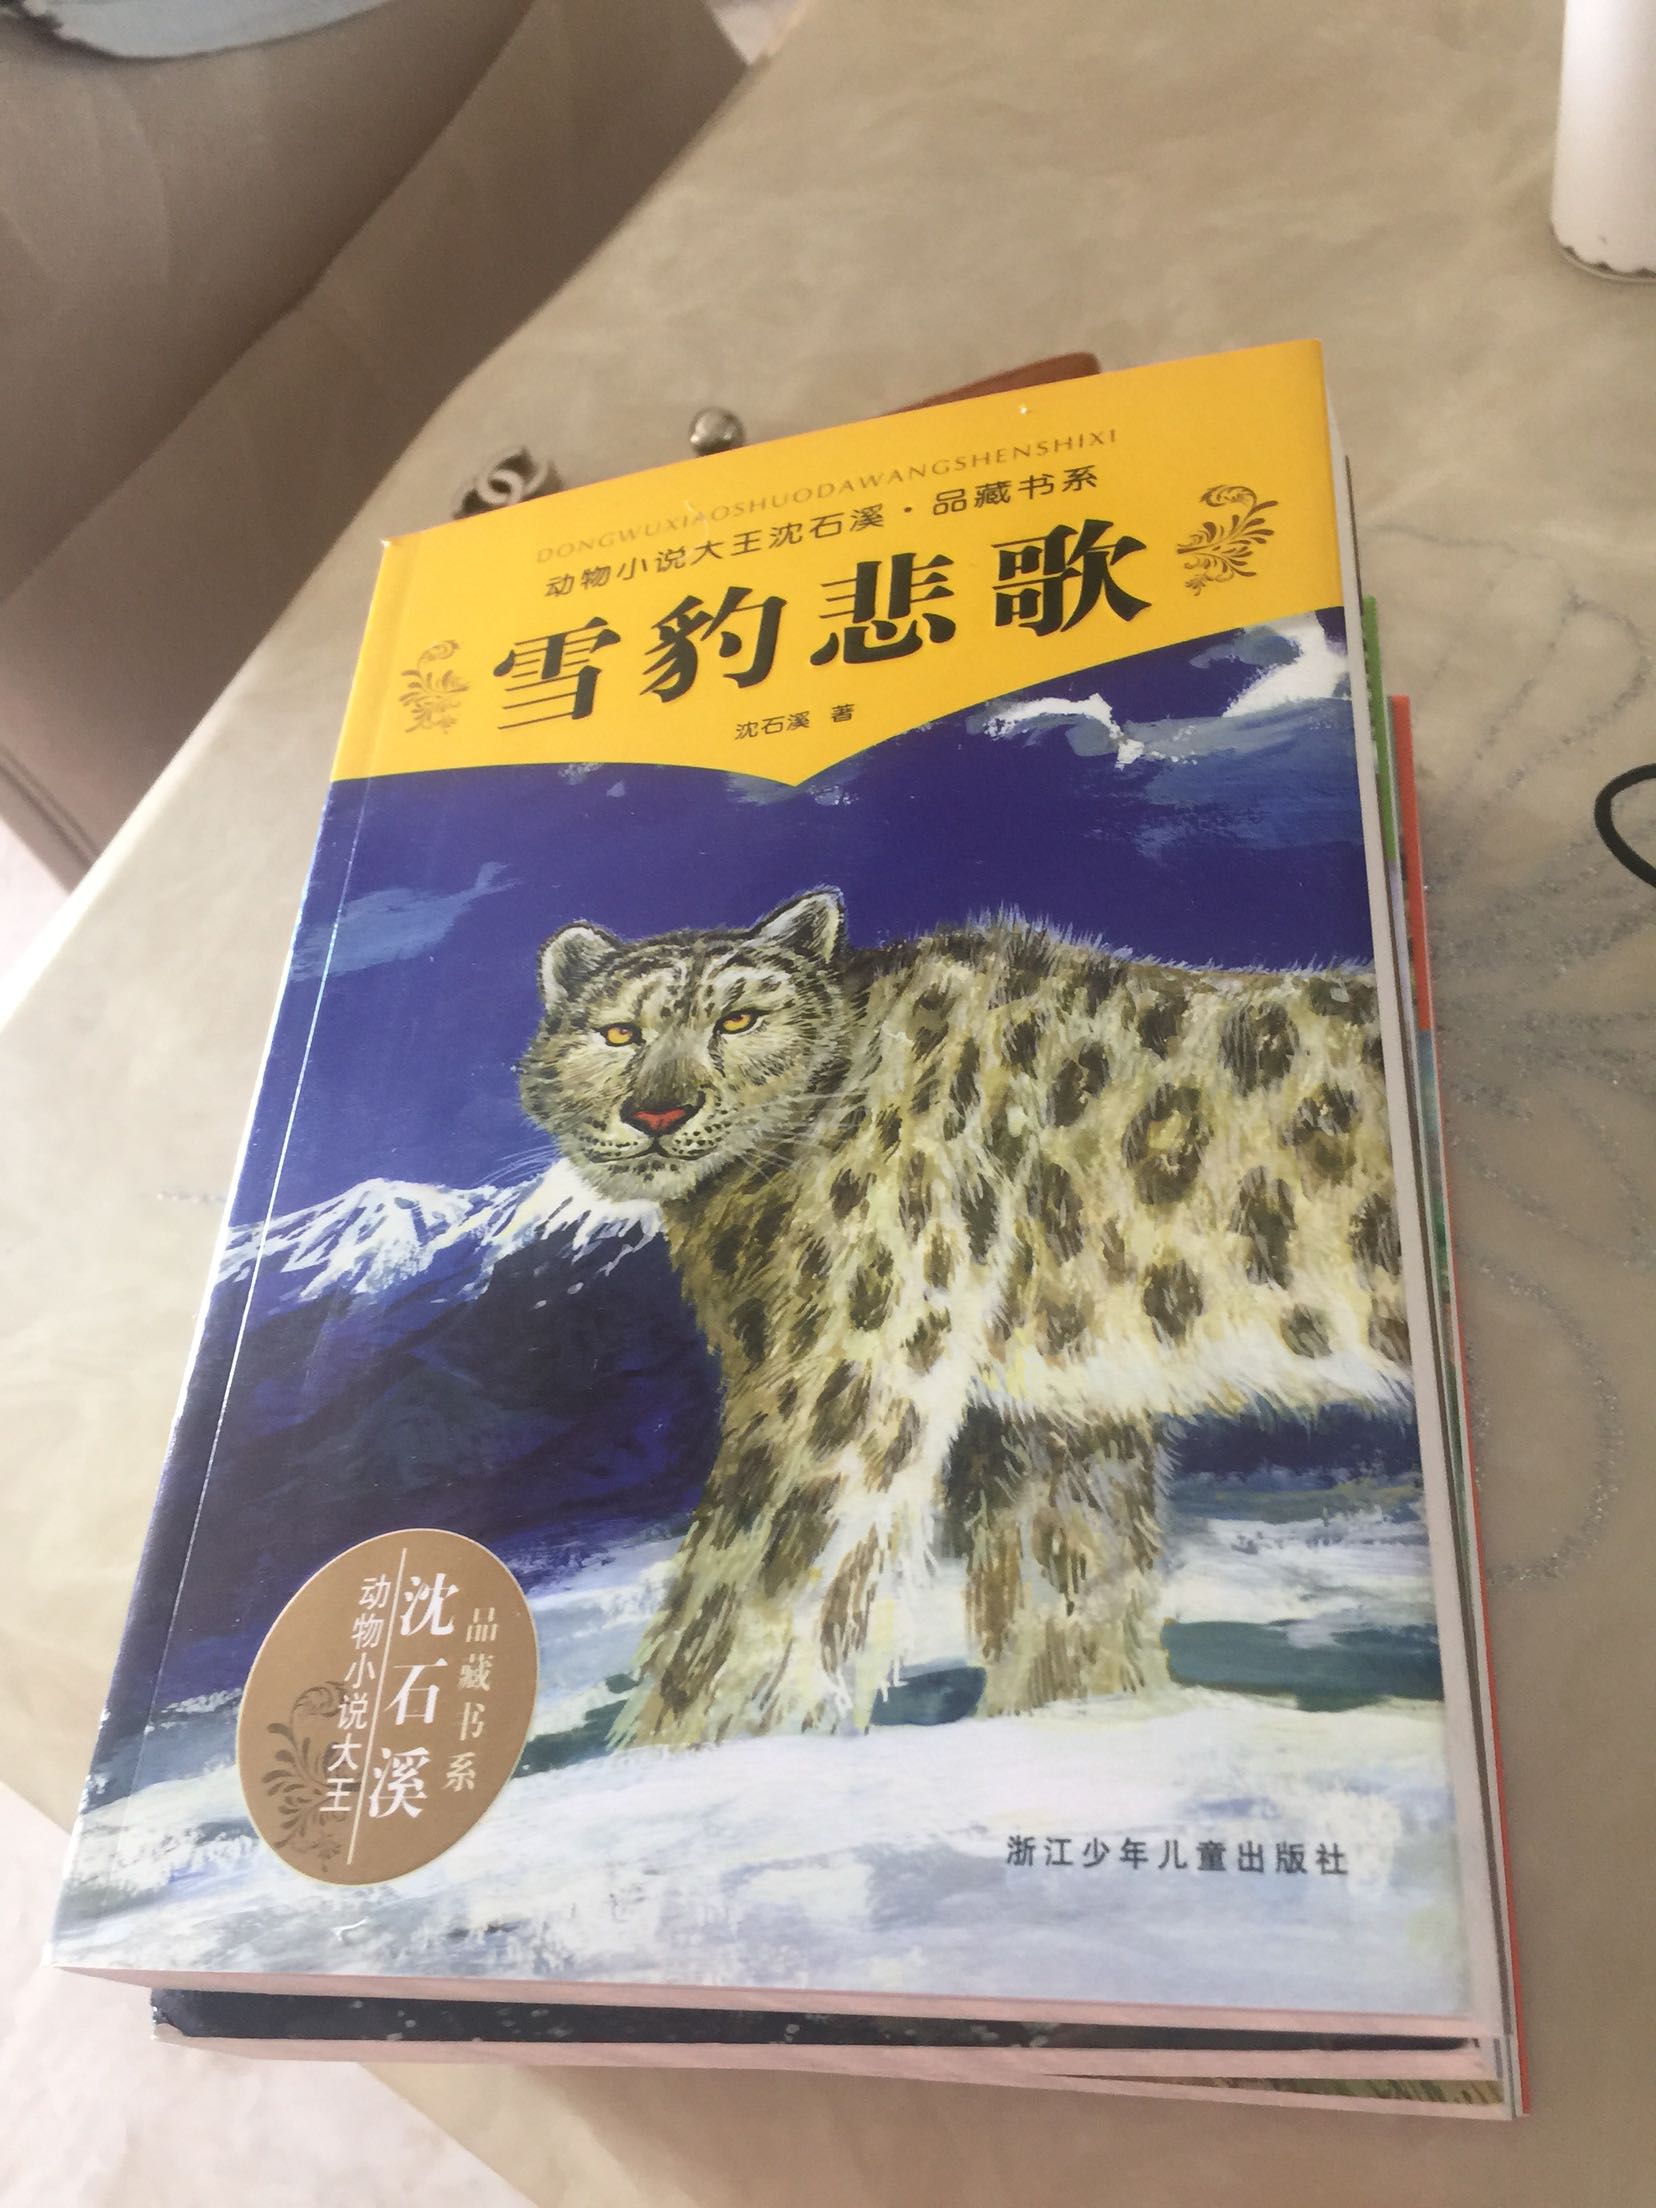 小孩很喜歡沈石溪的動物小說了，這是第二次購買，是正版的